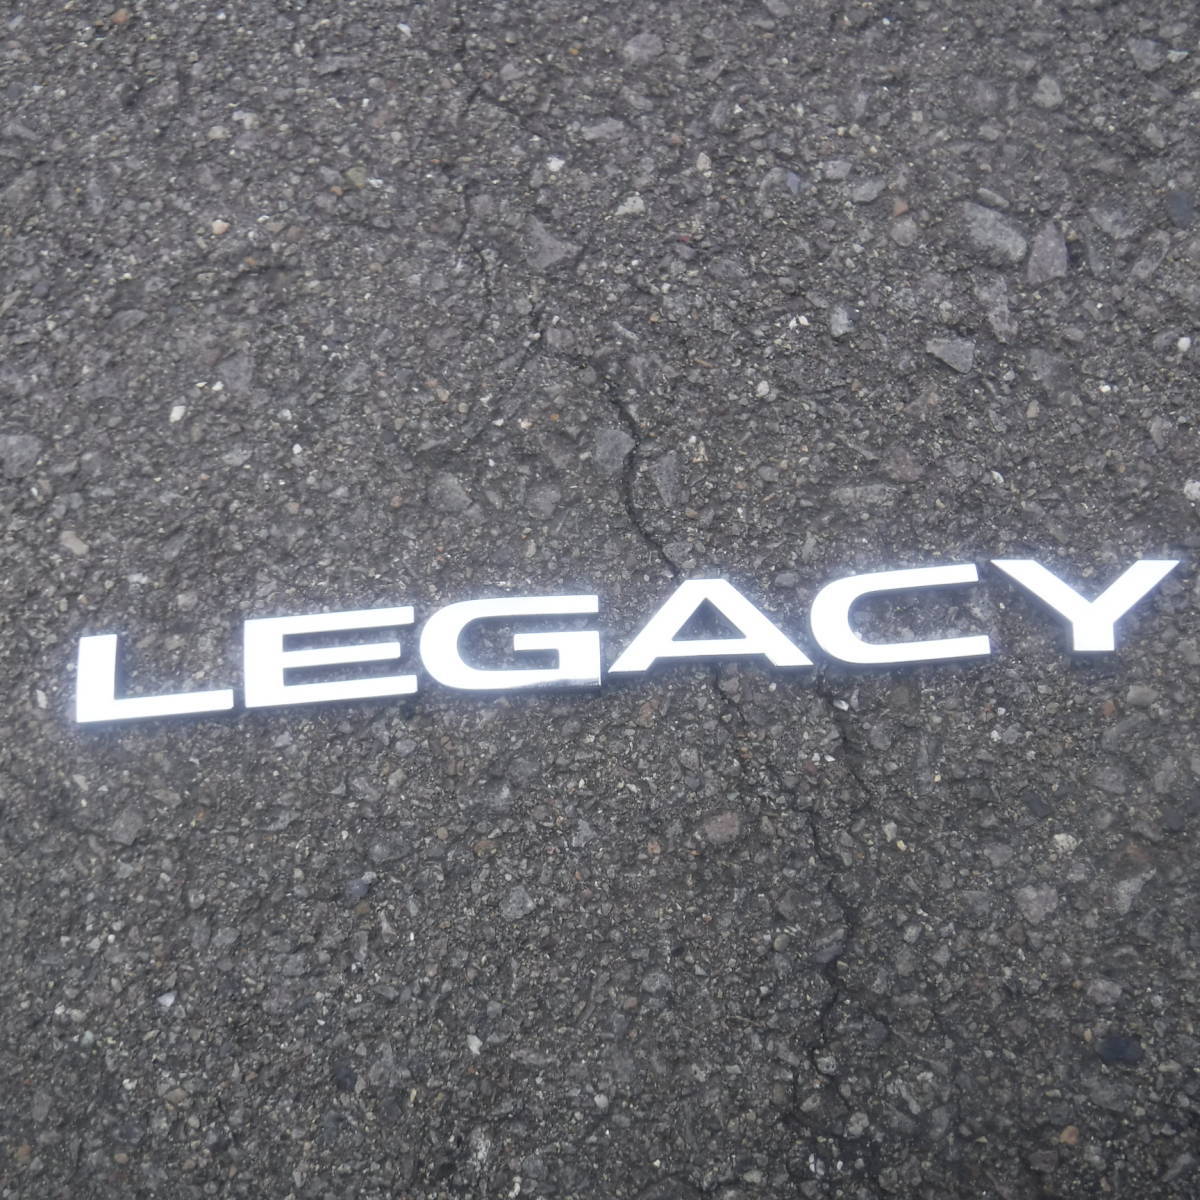  Legacy BH5 Legacy Legacy Touring Wagon Subaru задняя торцевая дверь задняя дверь LEGACY эмблема задний эмблема задний орнамент Mark 